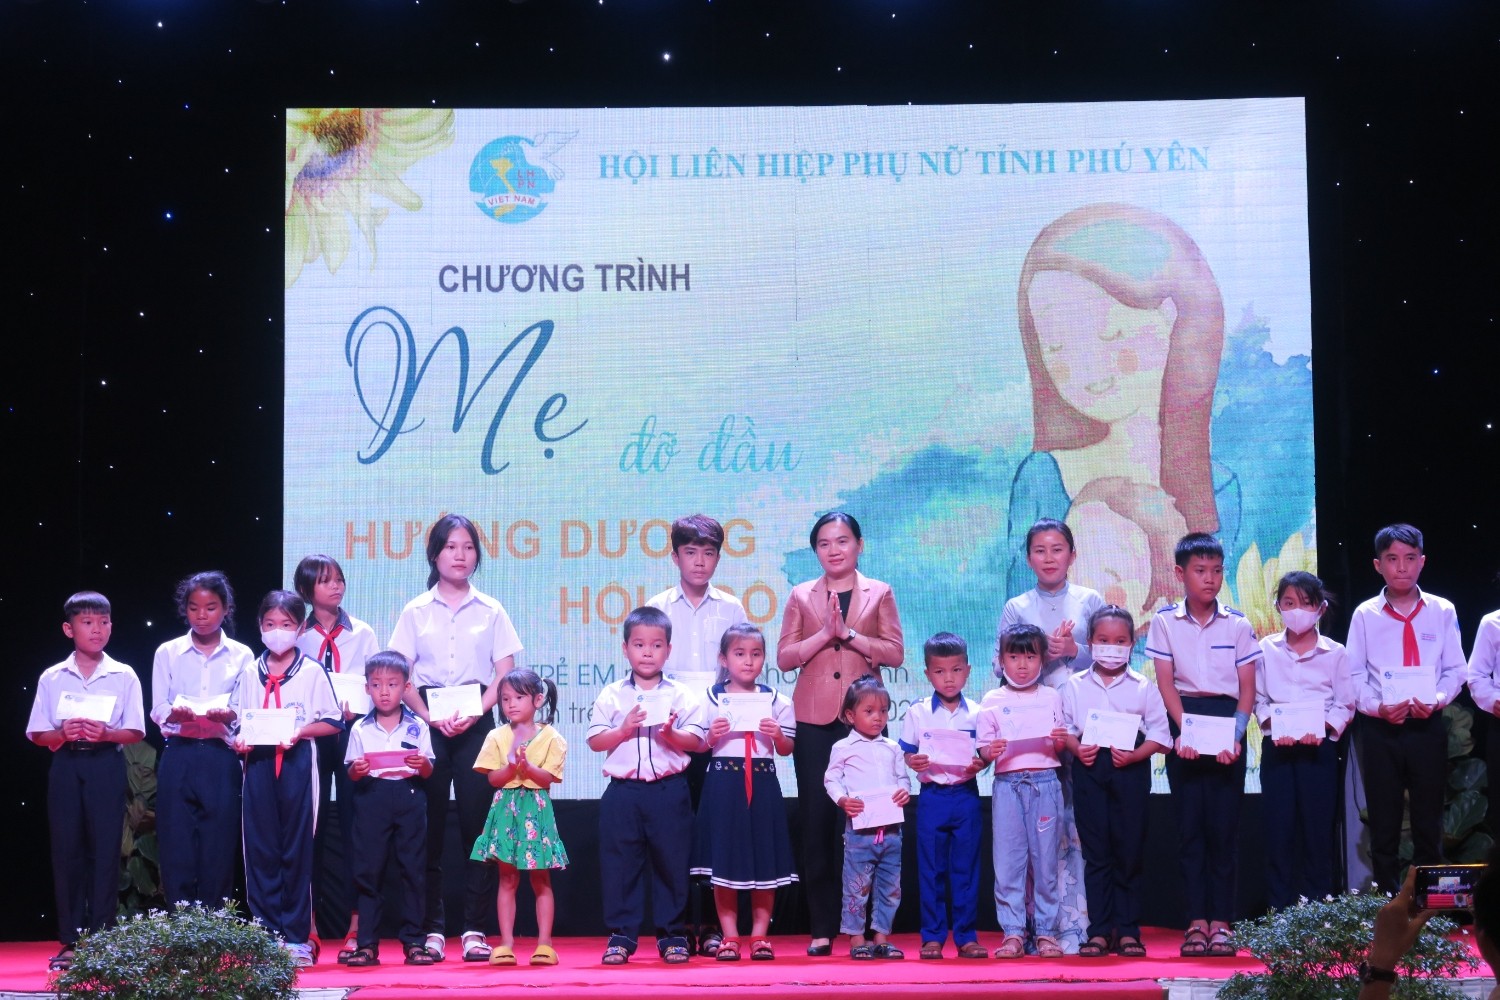  Hội Liên hiệp Phụ nữ tỉnh Phú Yên trao học bổng của Trung ương Hội Phụ nữ Việt Nam cho trẻ em mồ côi. (Ảnh: Hội Liên hiệp Phụ nữ Việt Nam)